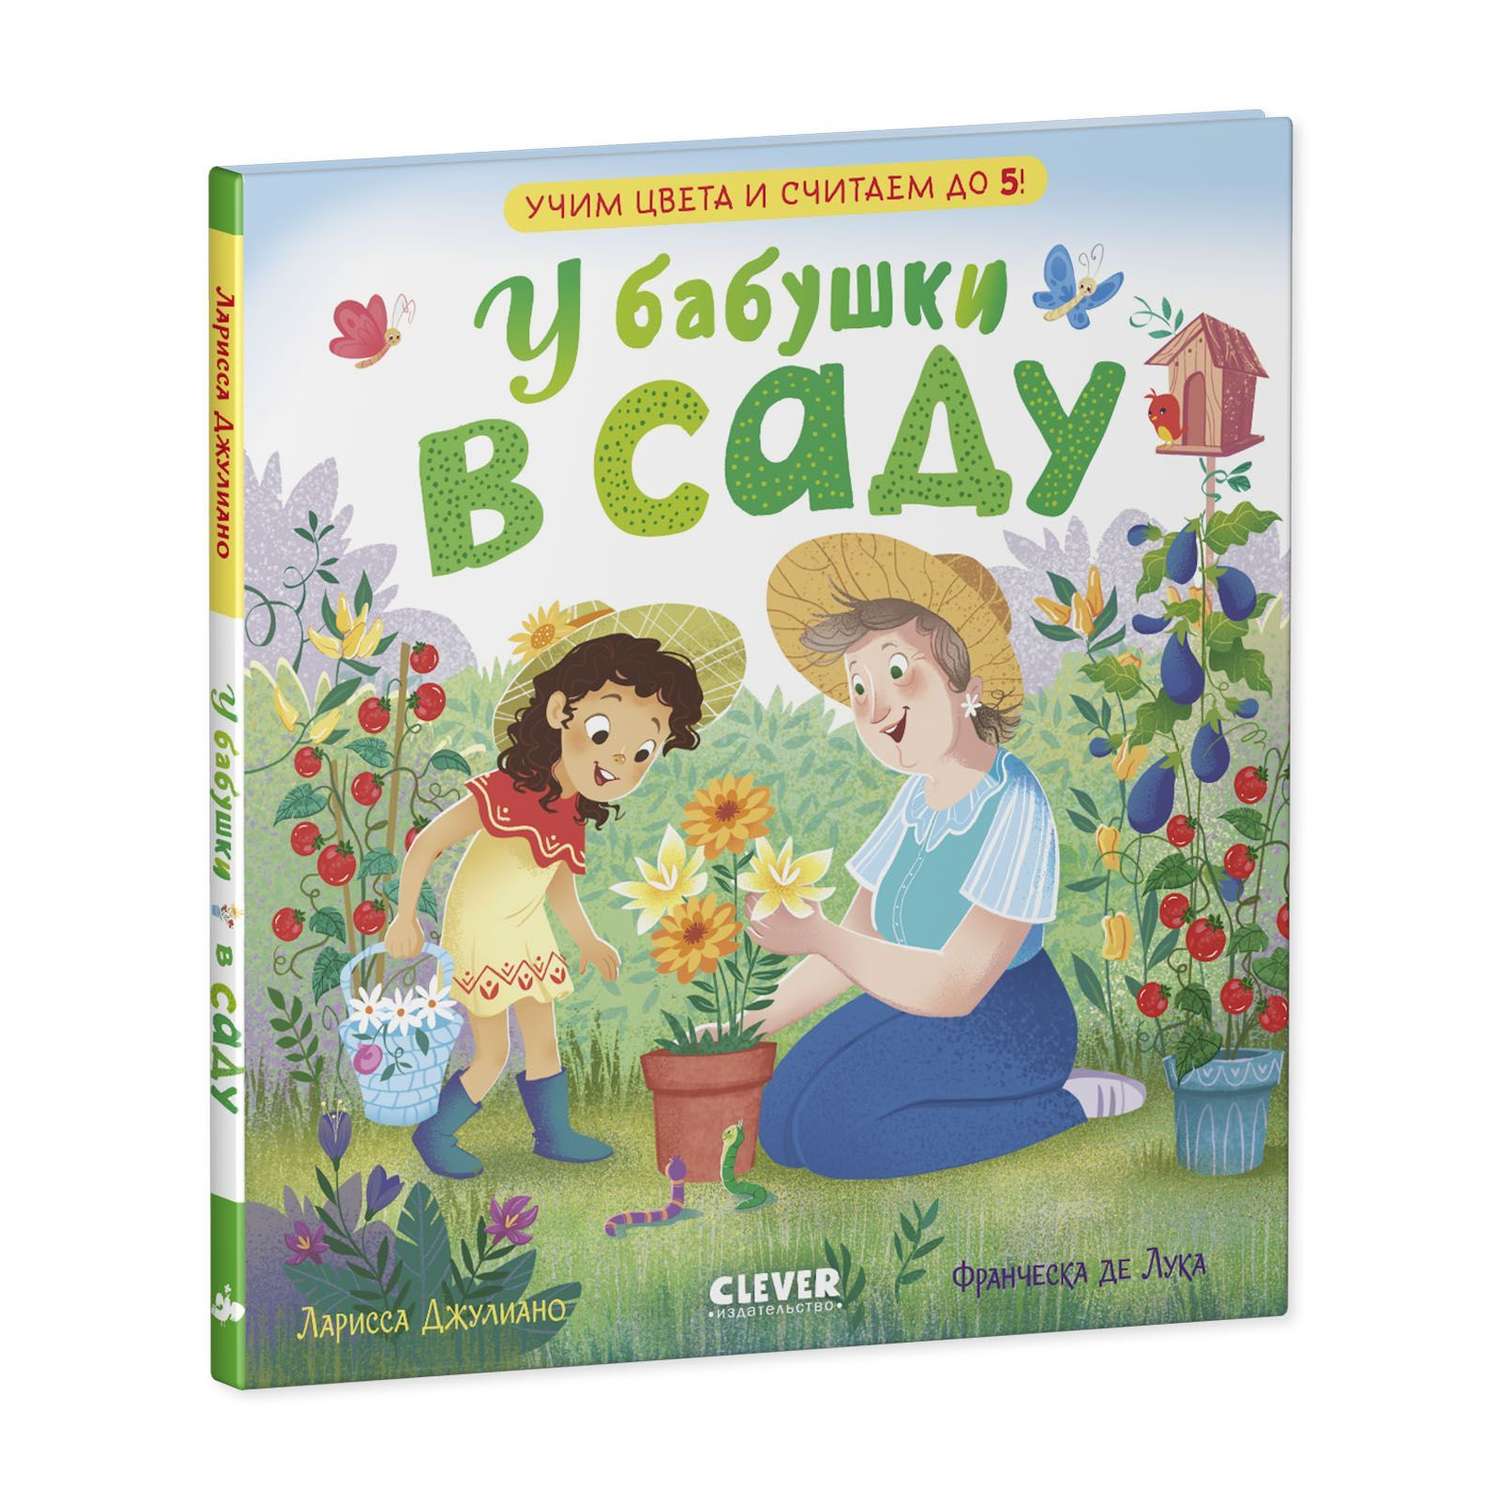 Книга Clever Издательство У бабушки в саду. Учим цвета и считаем до 5 - фото 2